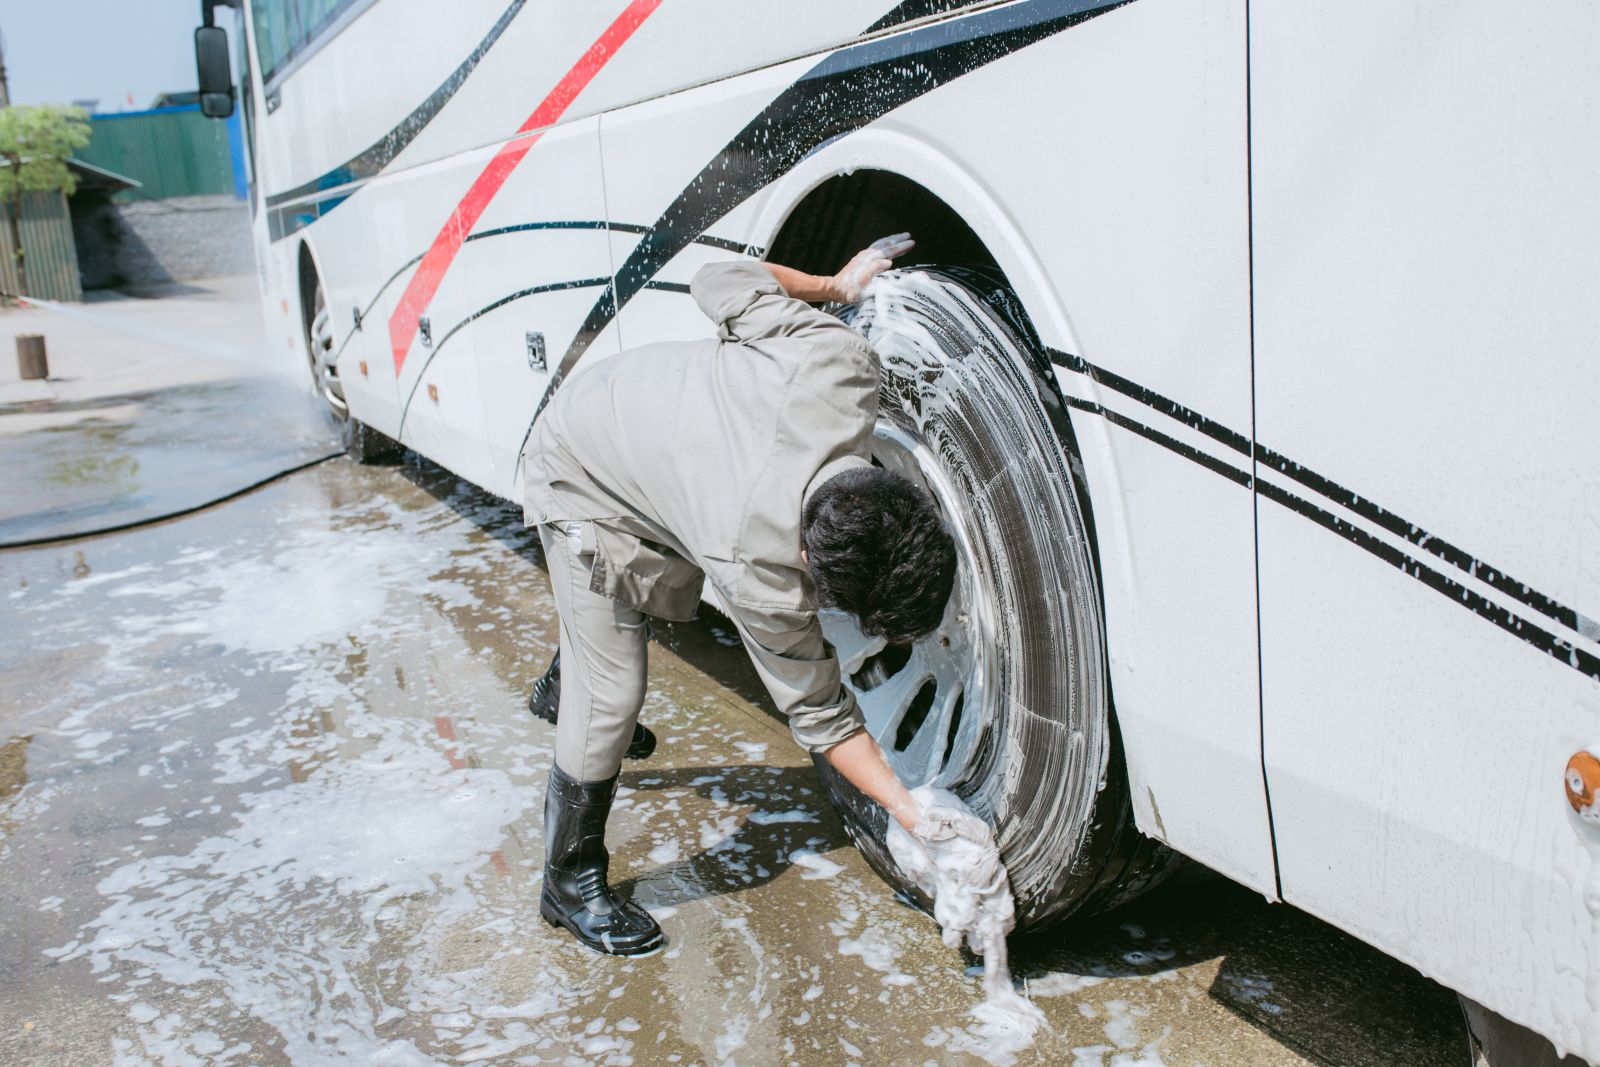 Việc làm sạch không chỉ giúp duy trì về độ “mới” và tính thẩm mỹ cho phương tiện xe